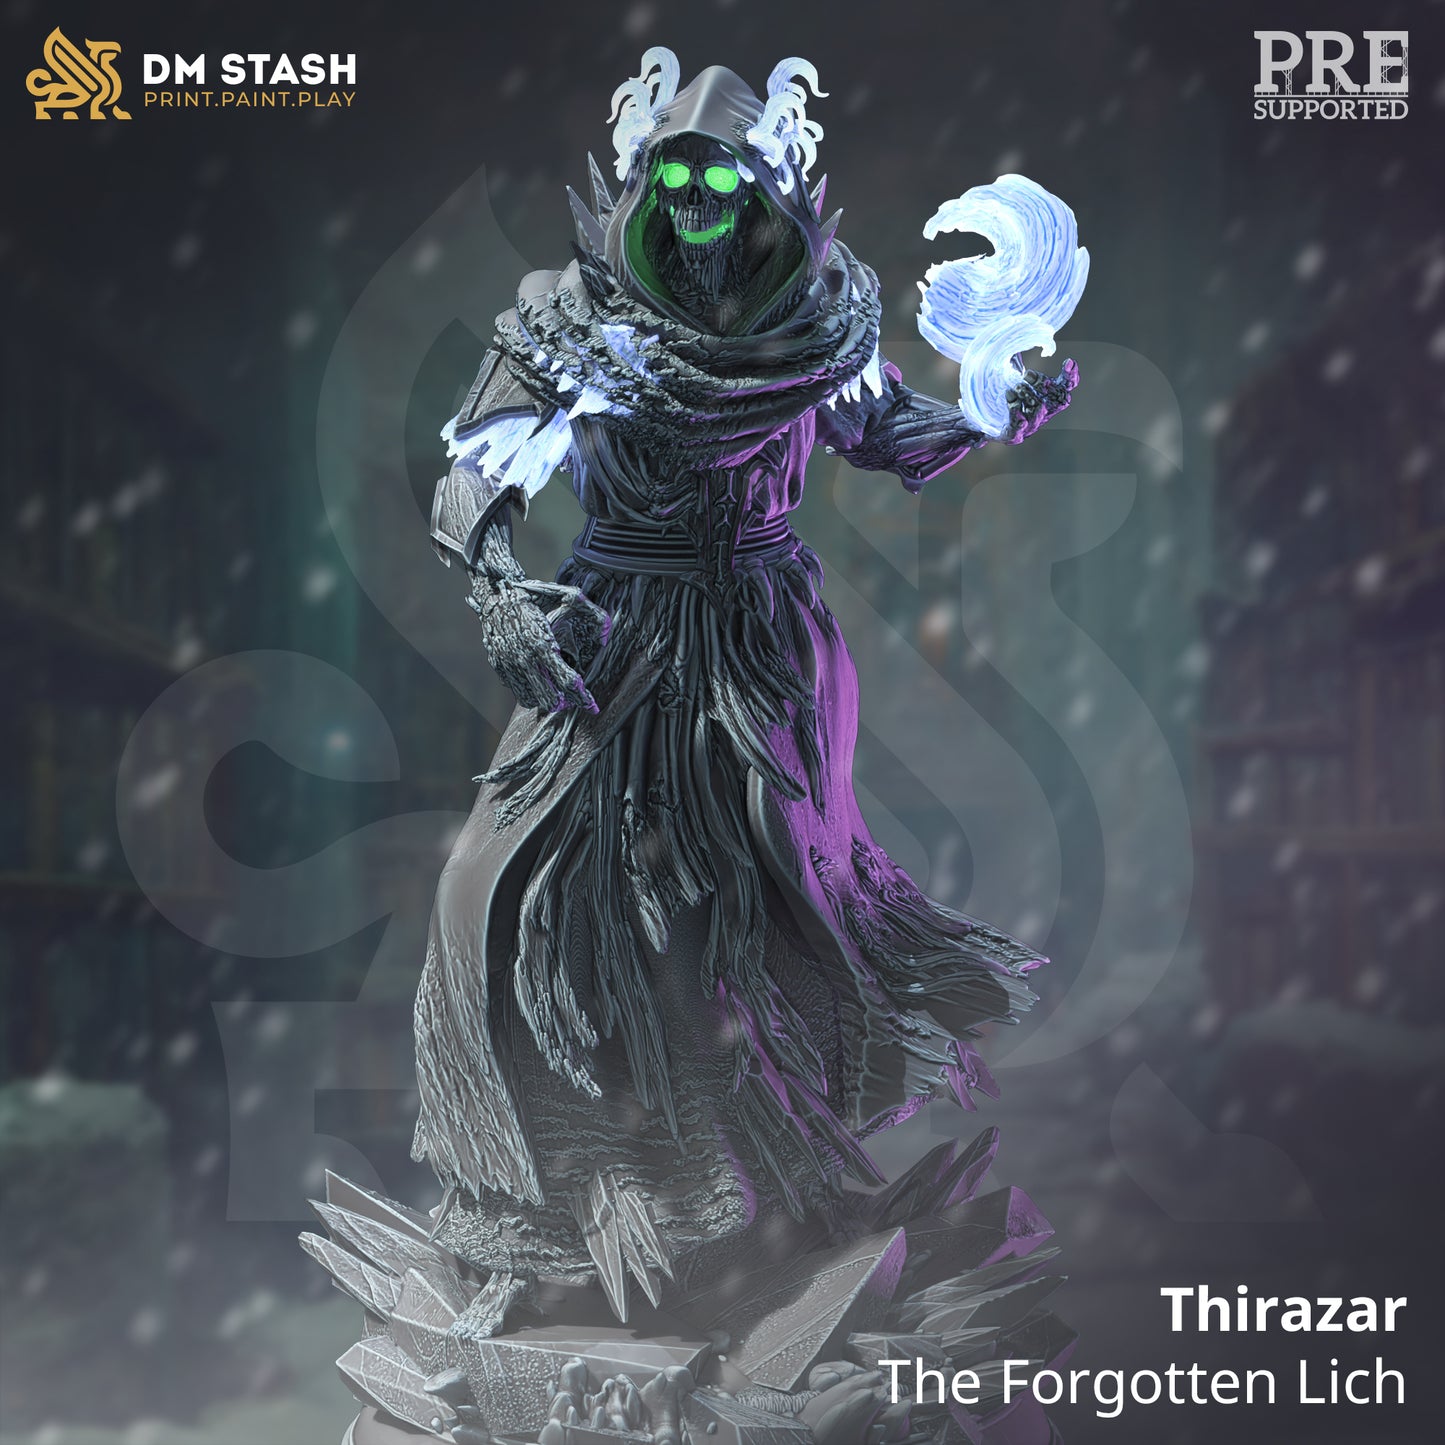 Thirazar, The Forgotten Lich